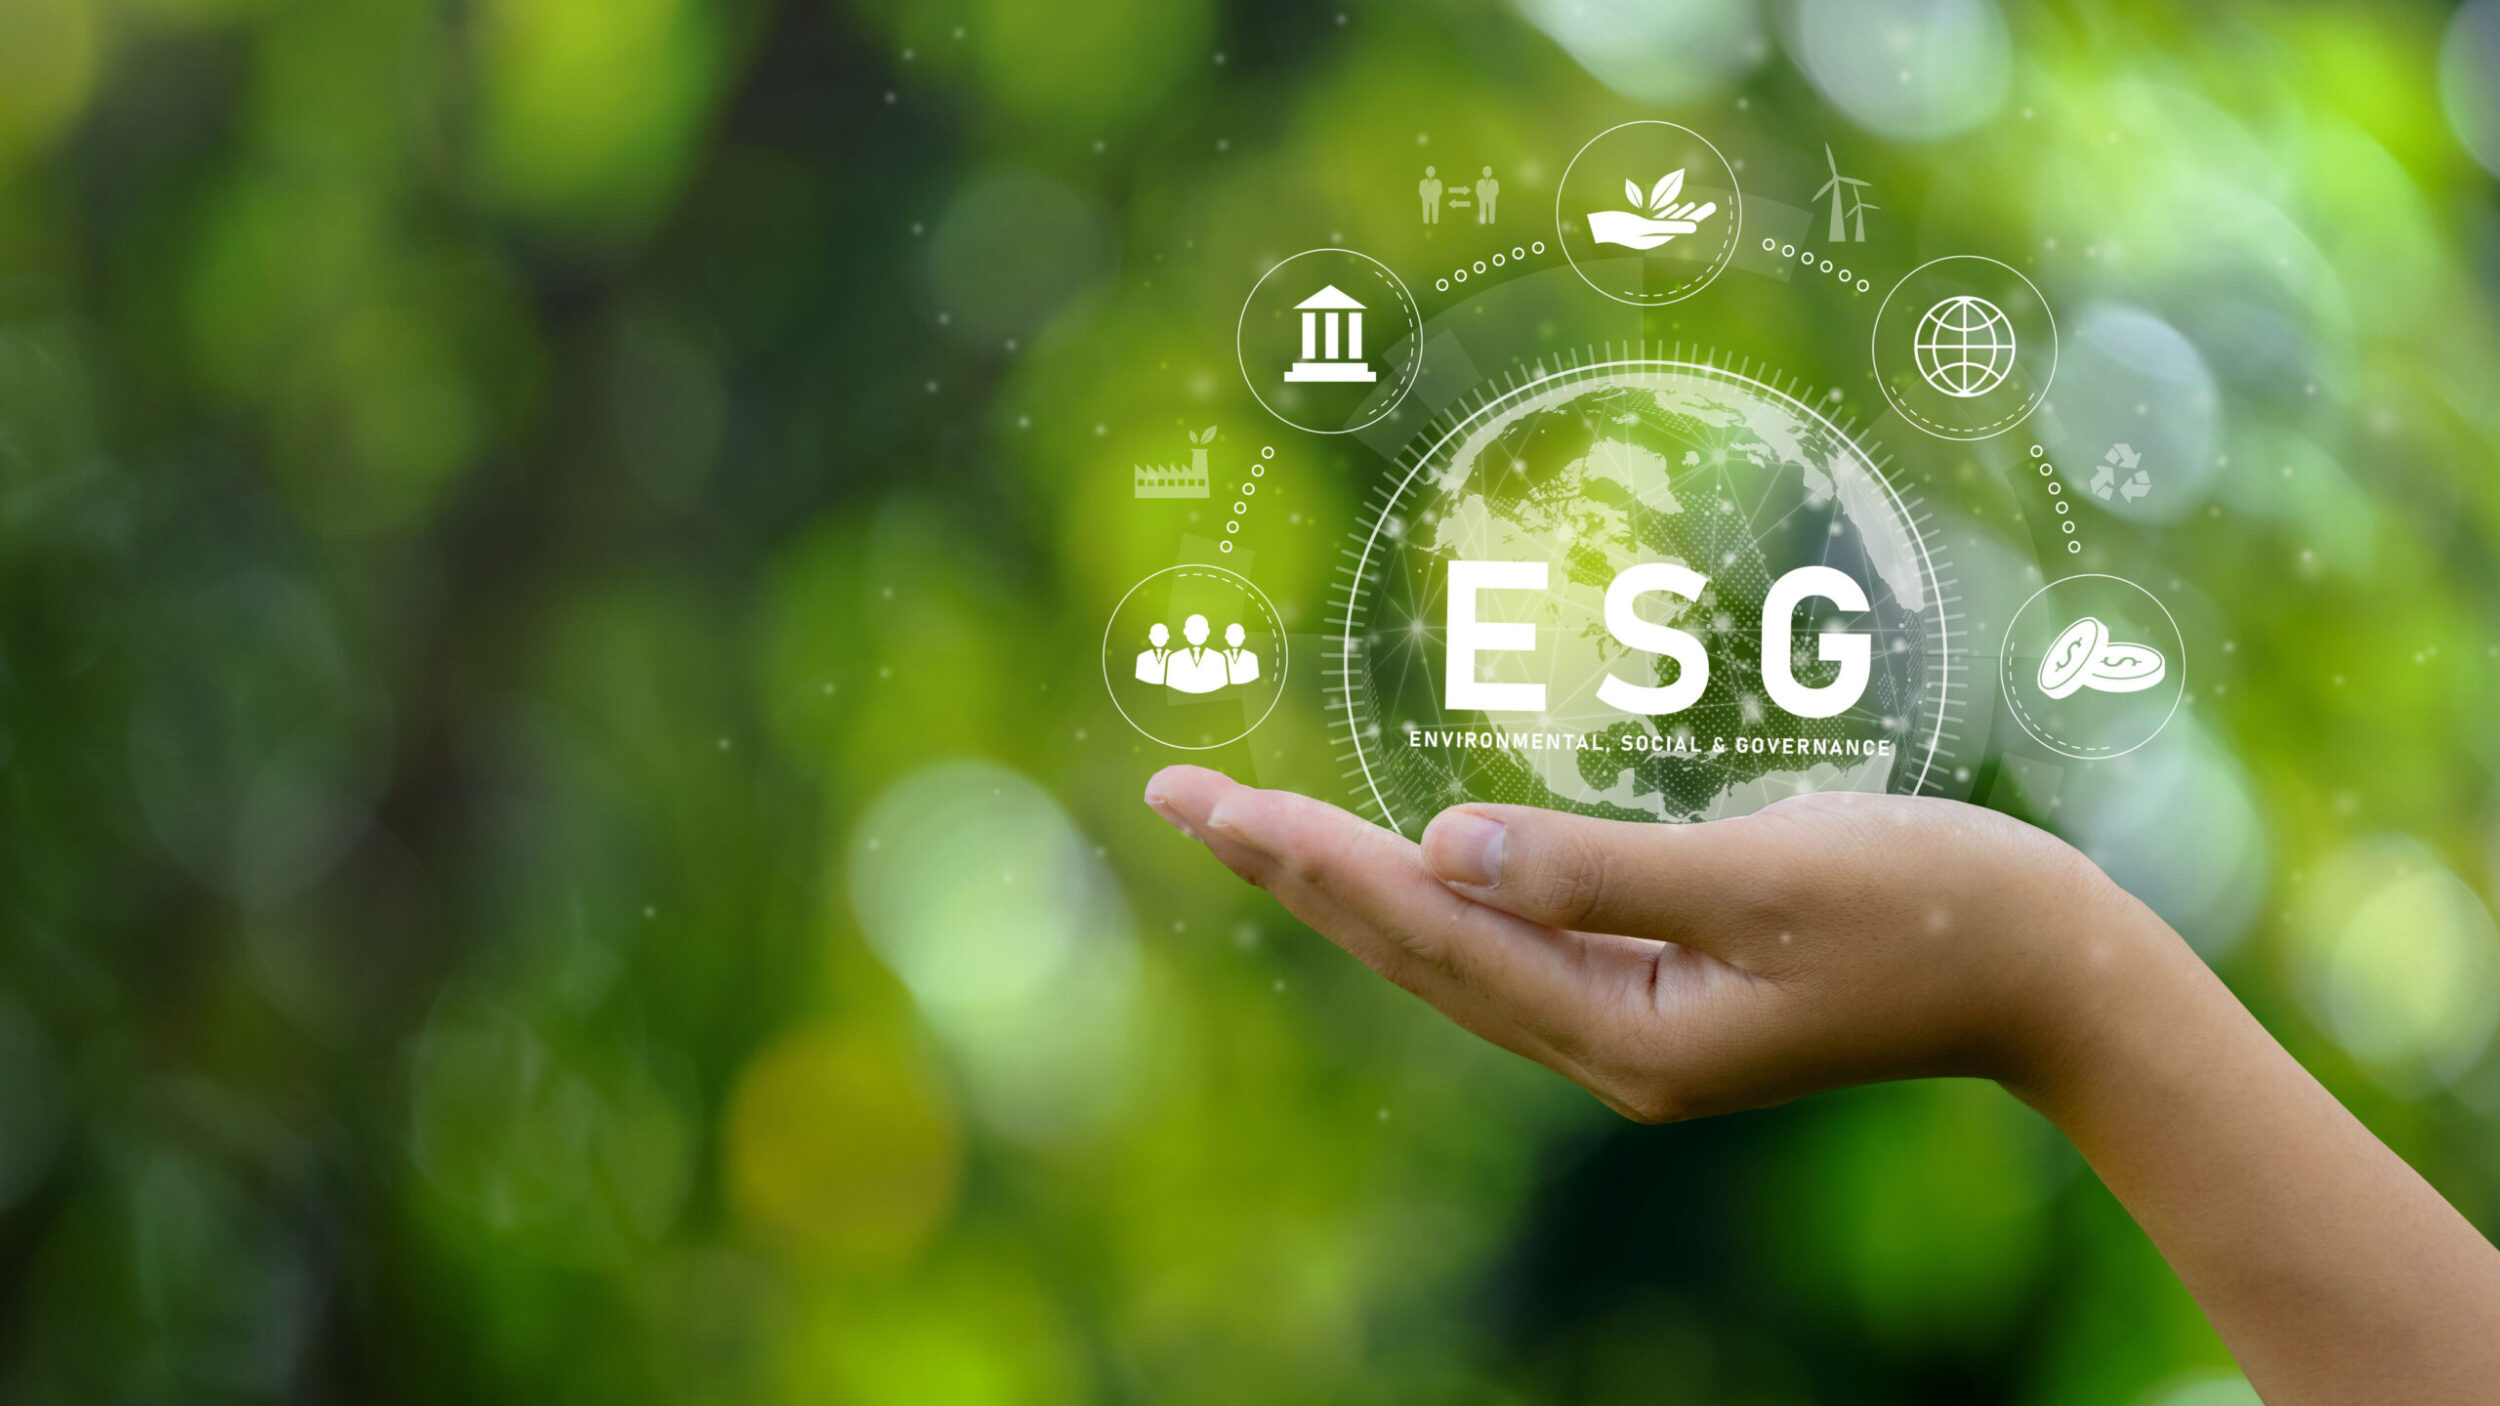 ESG Webcast Episode 6: ESG topics for SMEs